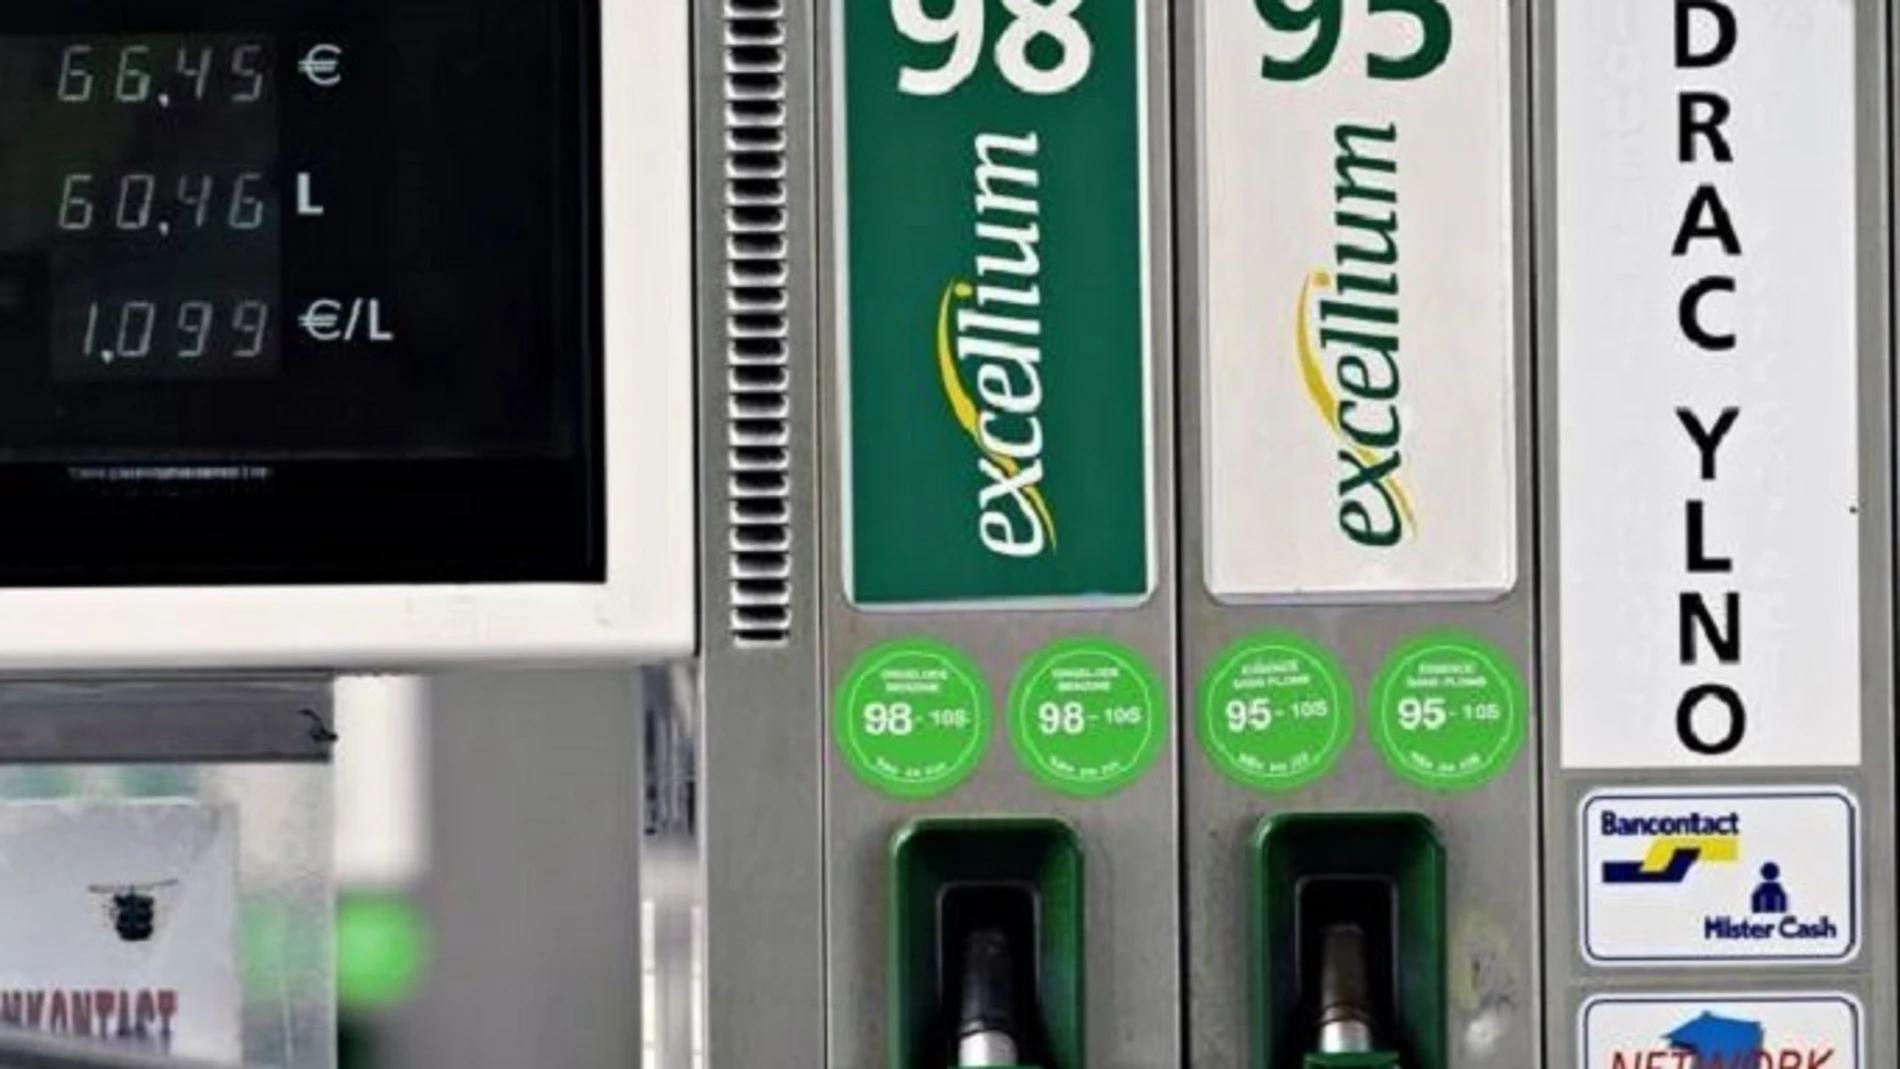 Economía.- La nueva orden que regula la apertura de las gasolineras "mitigará la tensión" del sector, según Aevecar